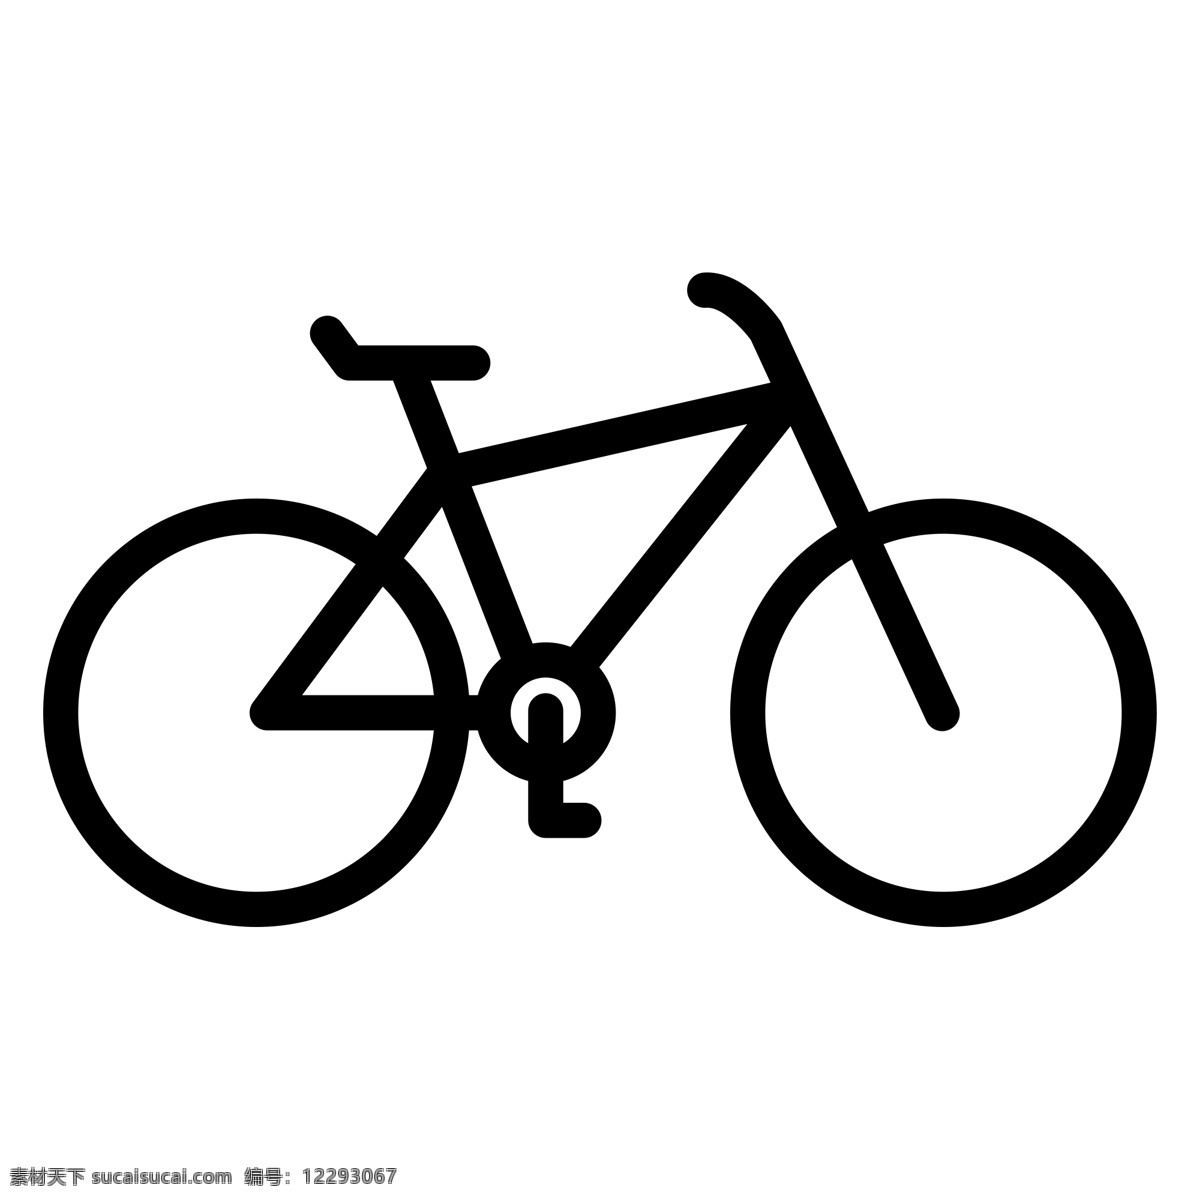 黑色 创意 自行车 元素 扁平化 ui 图标 线稿 交通工具 把手 座位 运输 体育